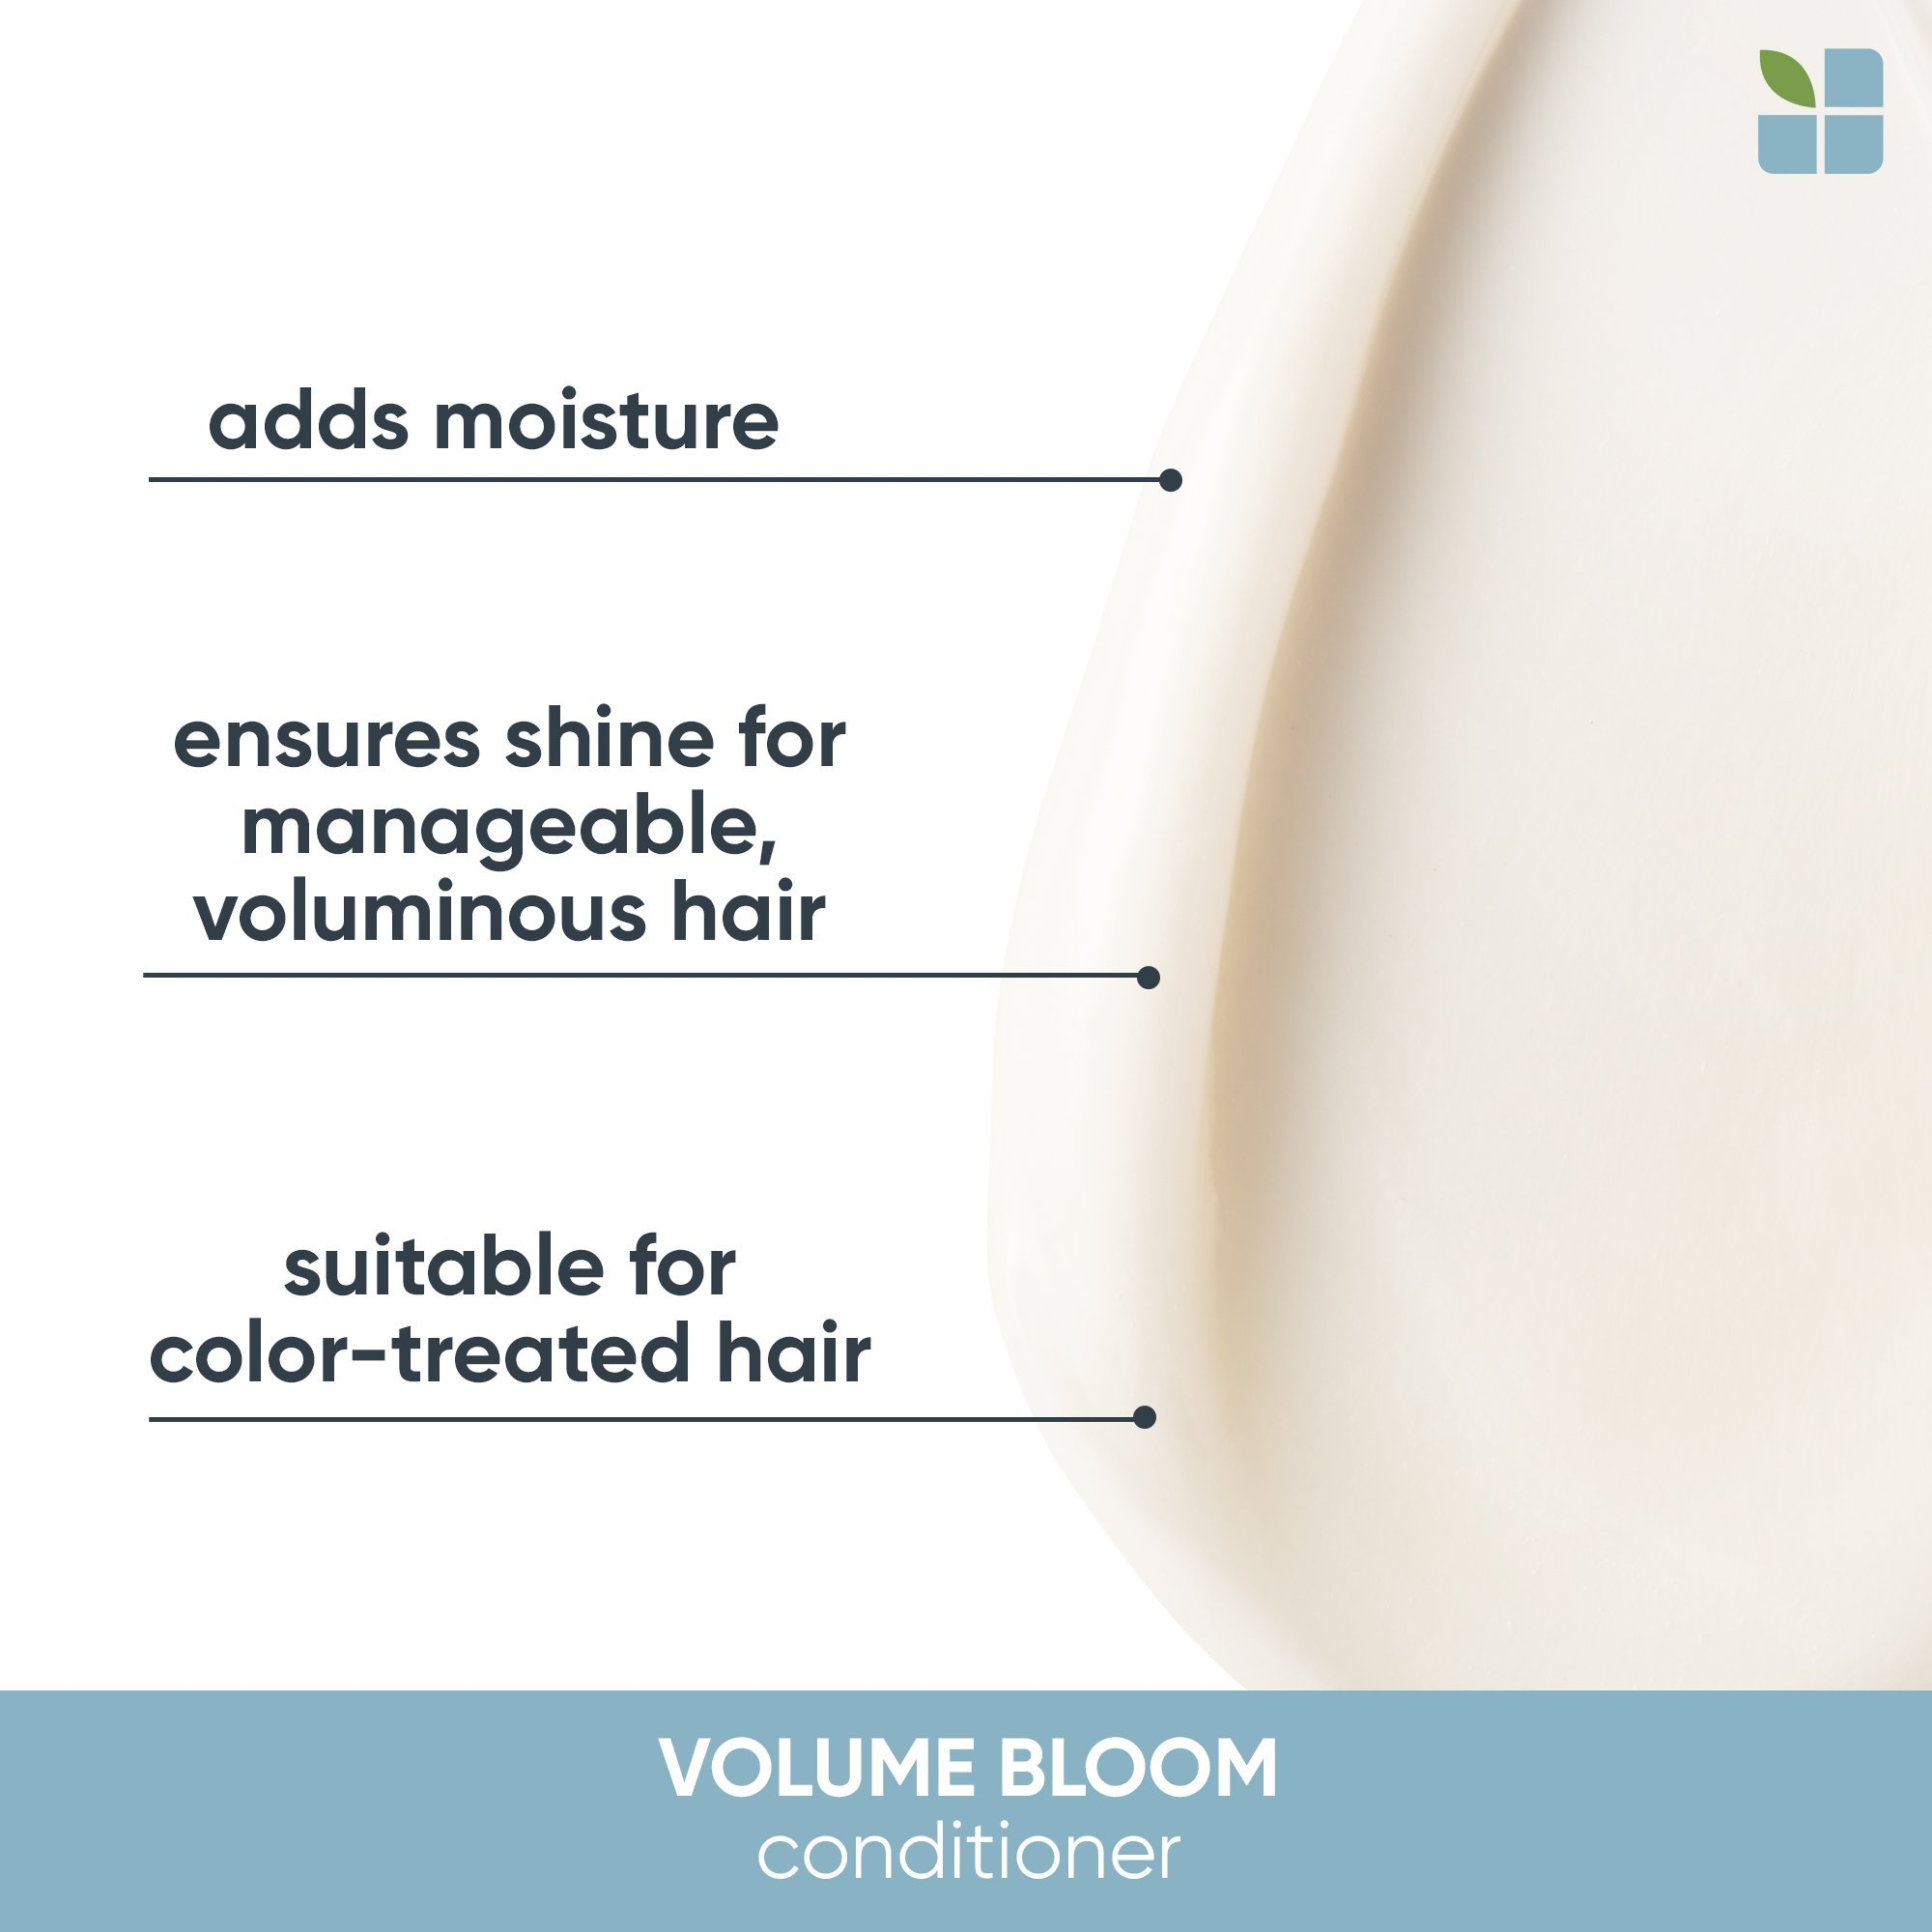 Matrix Biolage VolumeBloom Shampoo & Conditioner Duo Liter Set ($76 Value) / 33.OZ